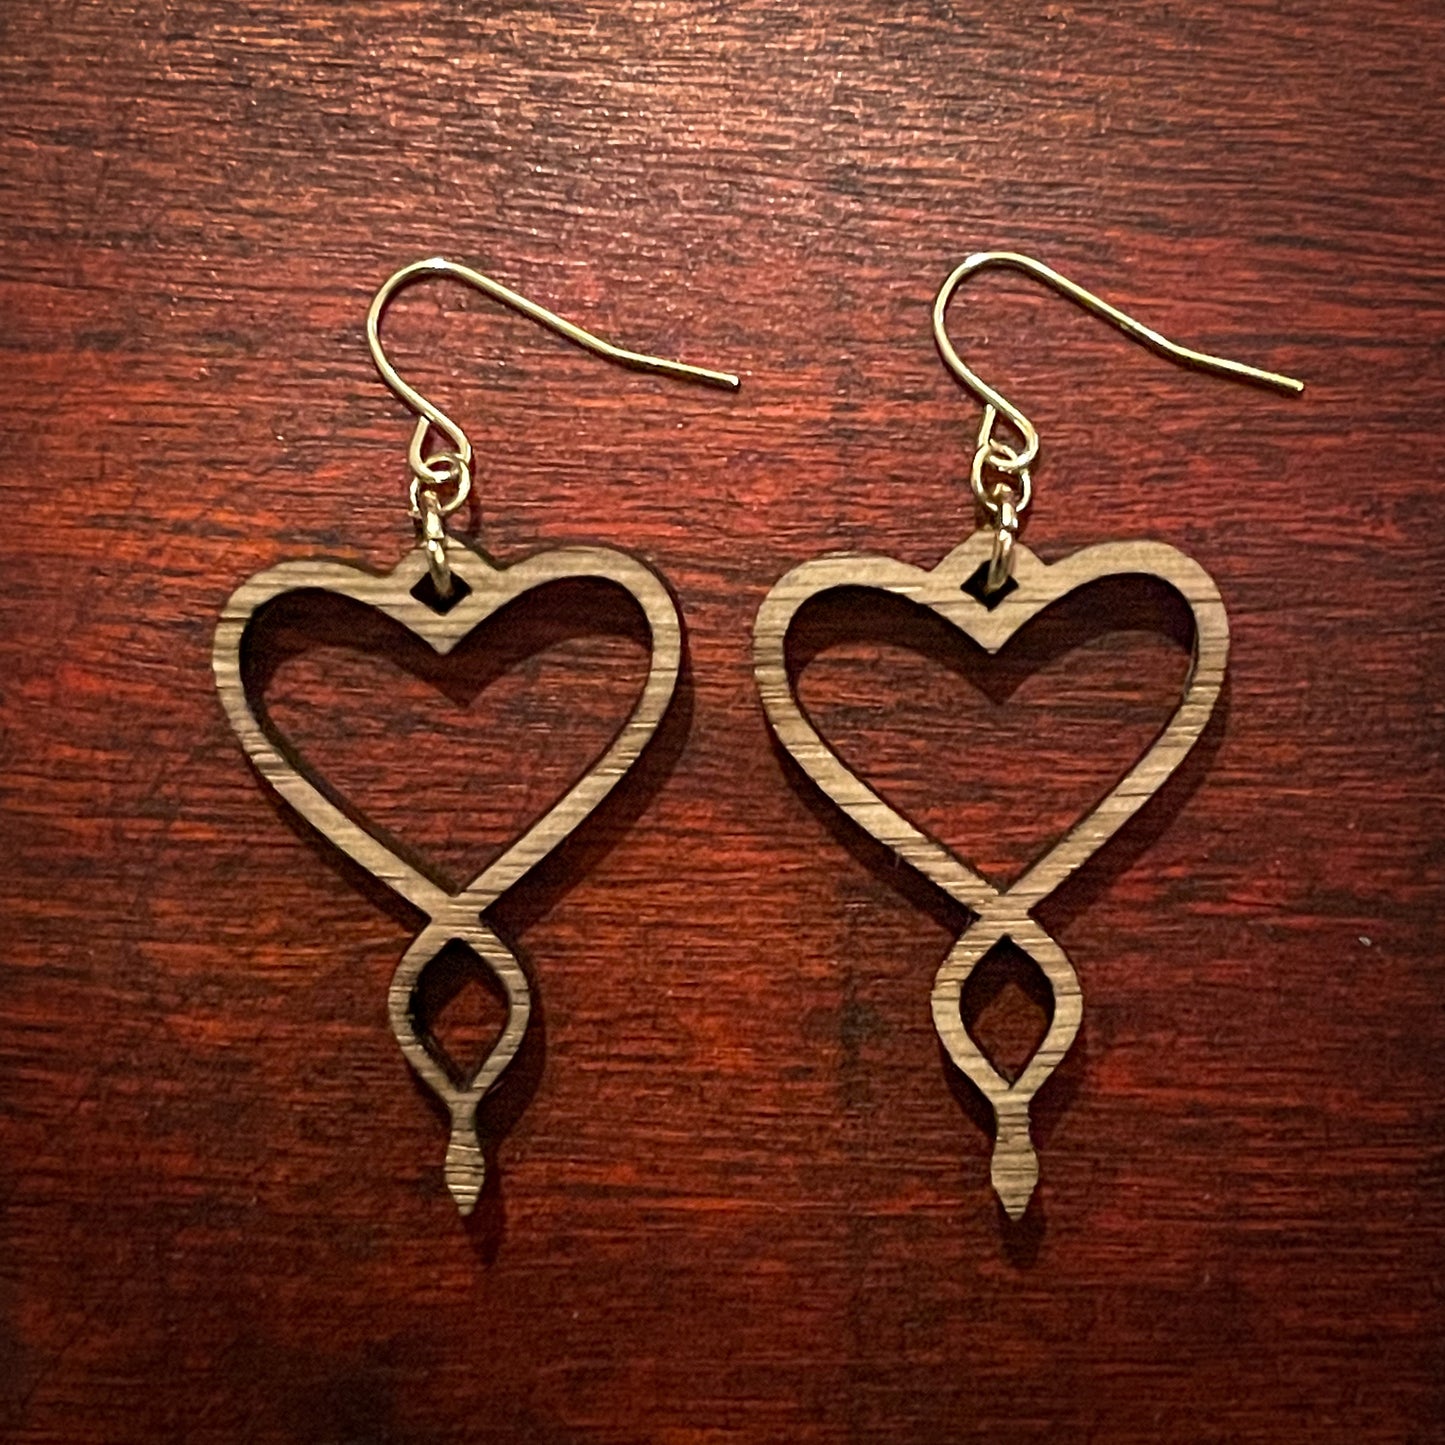 Heart Twist wood earrings, 14K gold plated